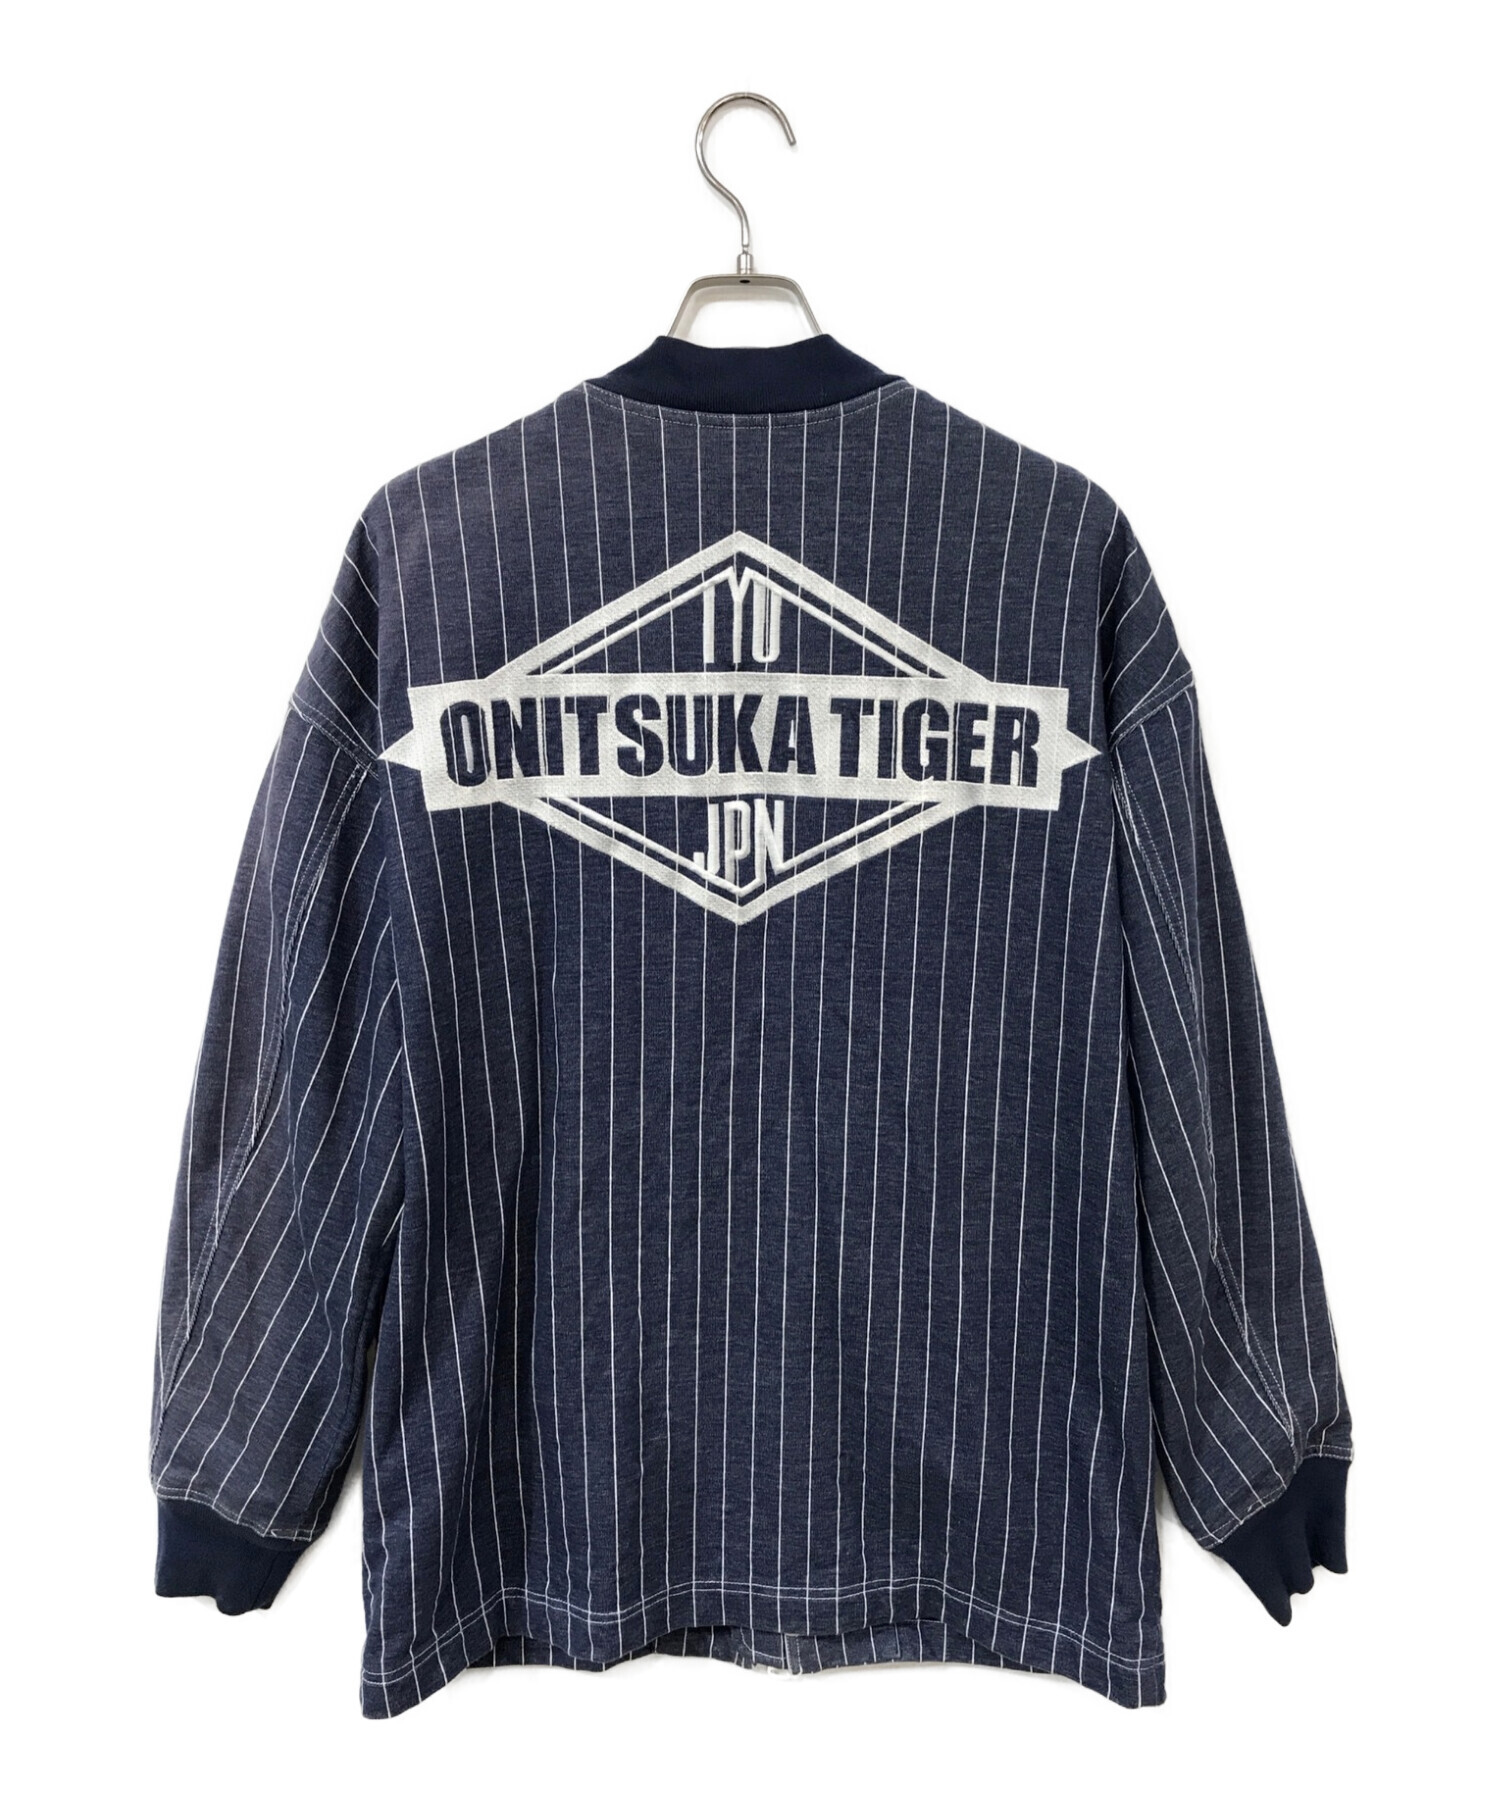 Onitsuka Tiger (オニツカタイガー) ANDREA POMPILIO (アンドレアポンピリオ) コラボストライプブルゾン  ネイビー×ホワイト サイズ:M